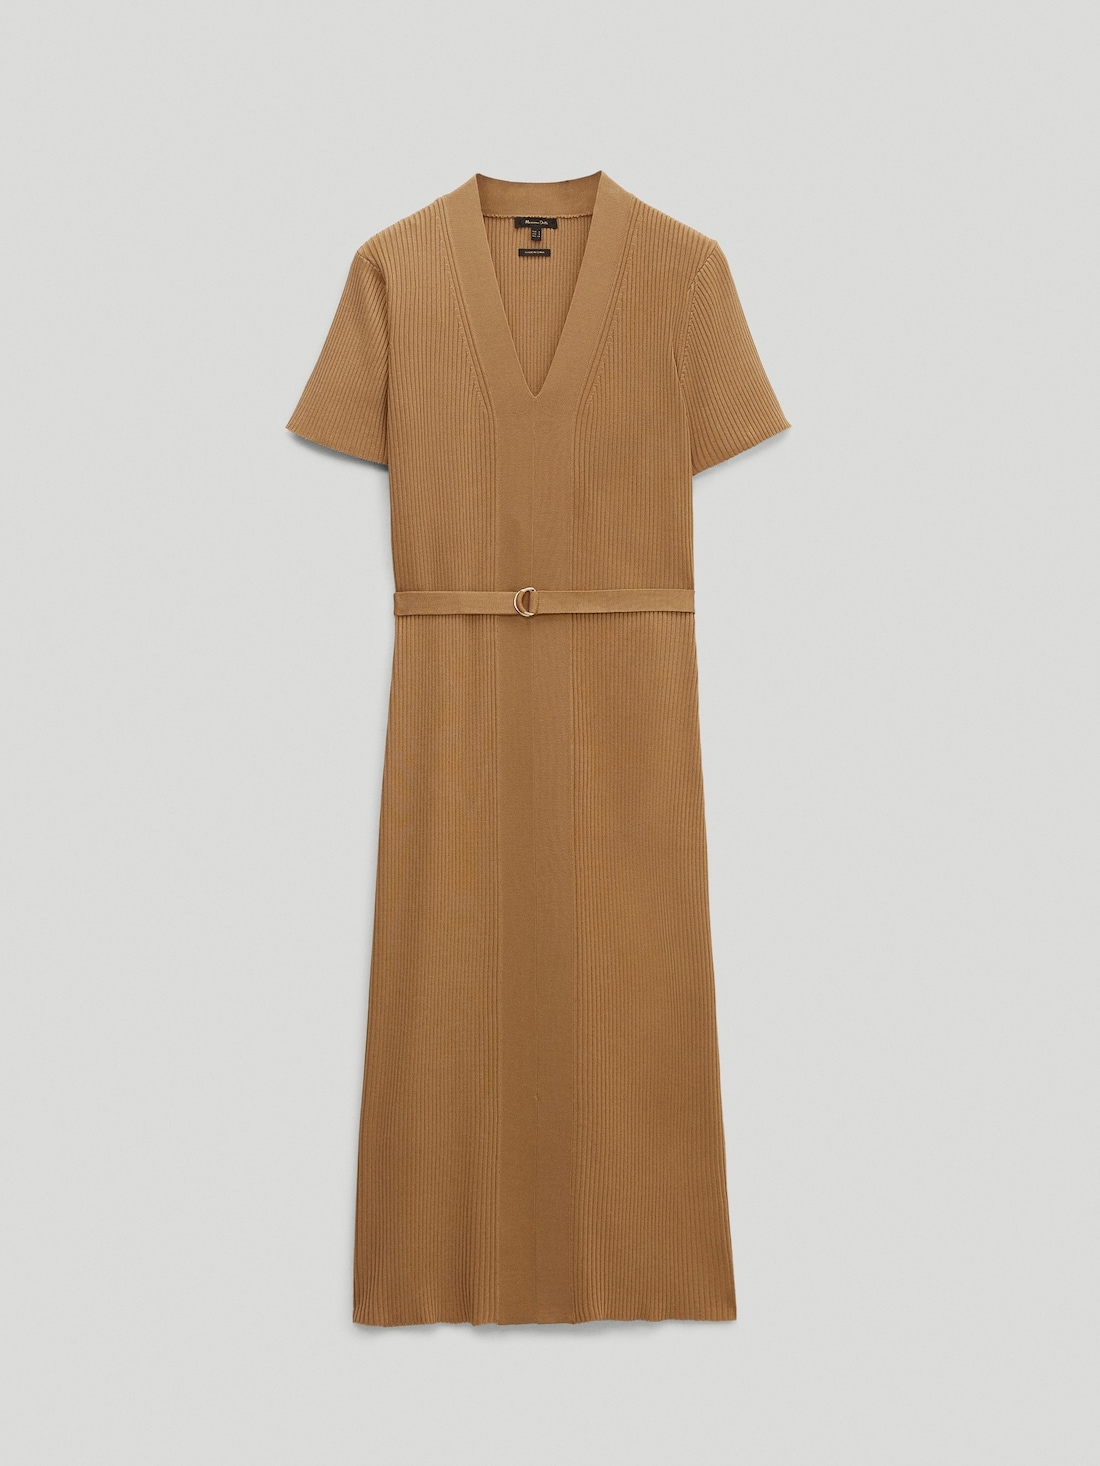 ЗОЛОТИСТЫЙ Платье из трикотажа в тонкий рубчик, с V-образным вырезом Massimo Dutti